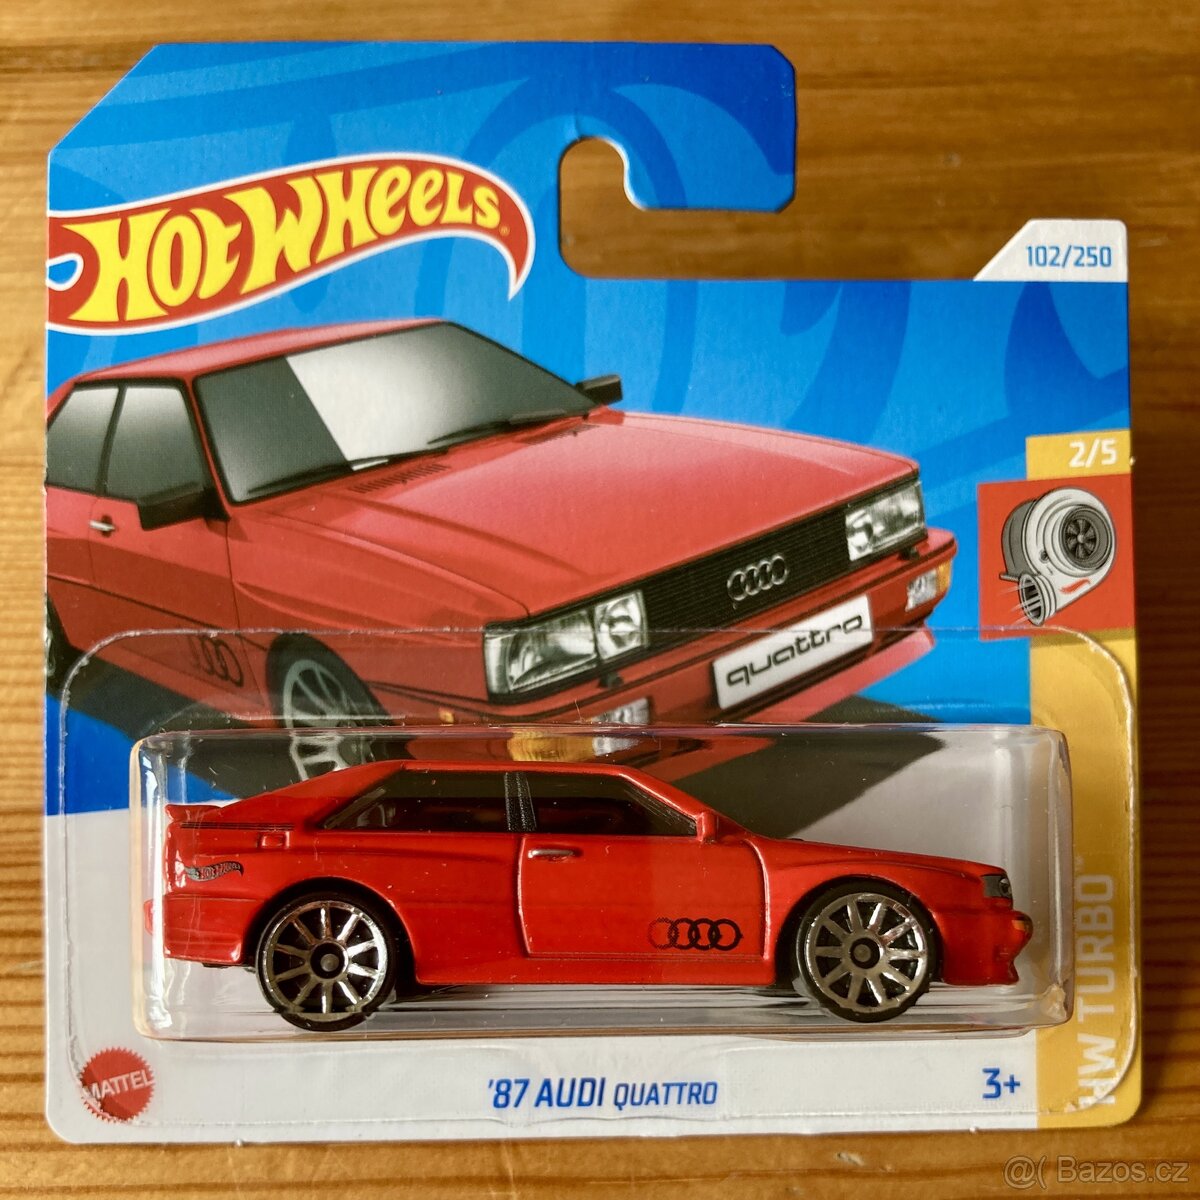 Hot wheels 87 Audi Quattro